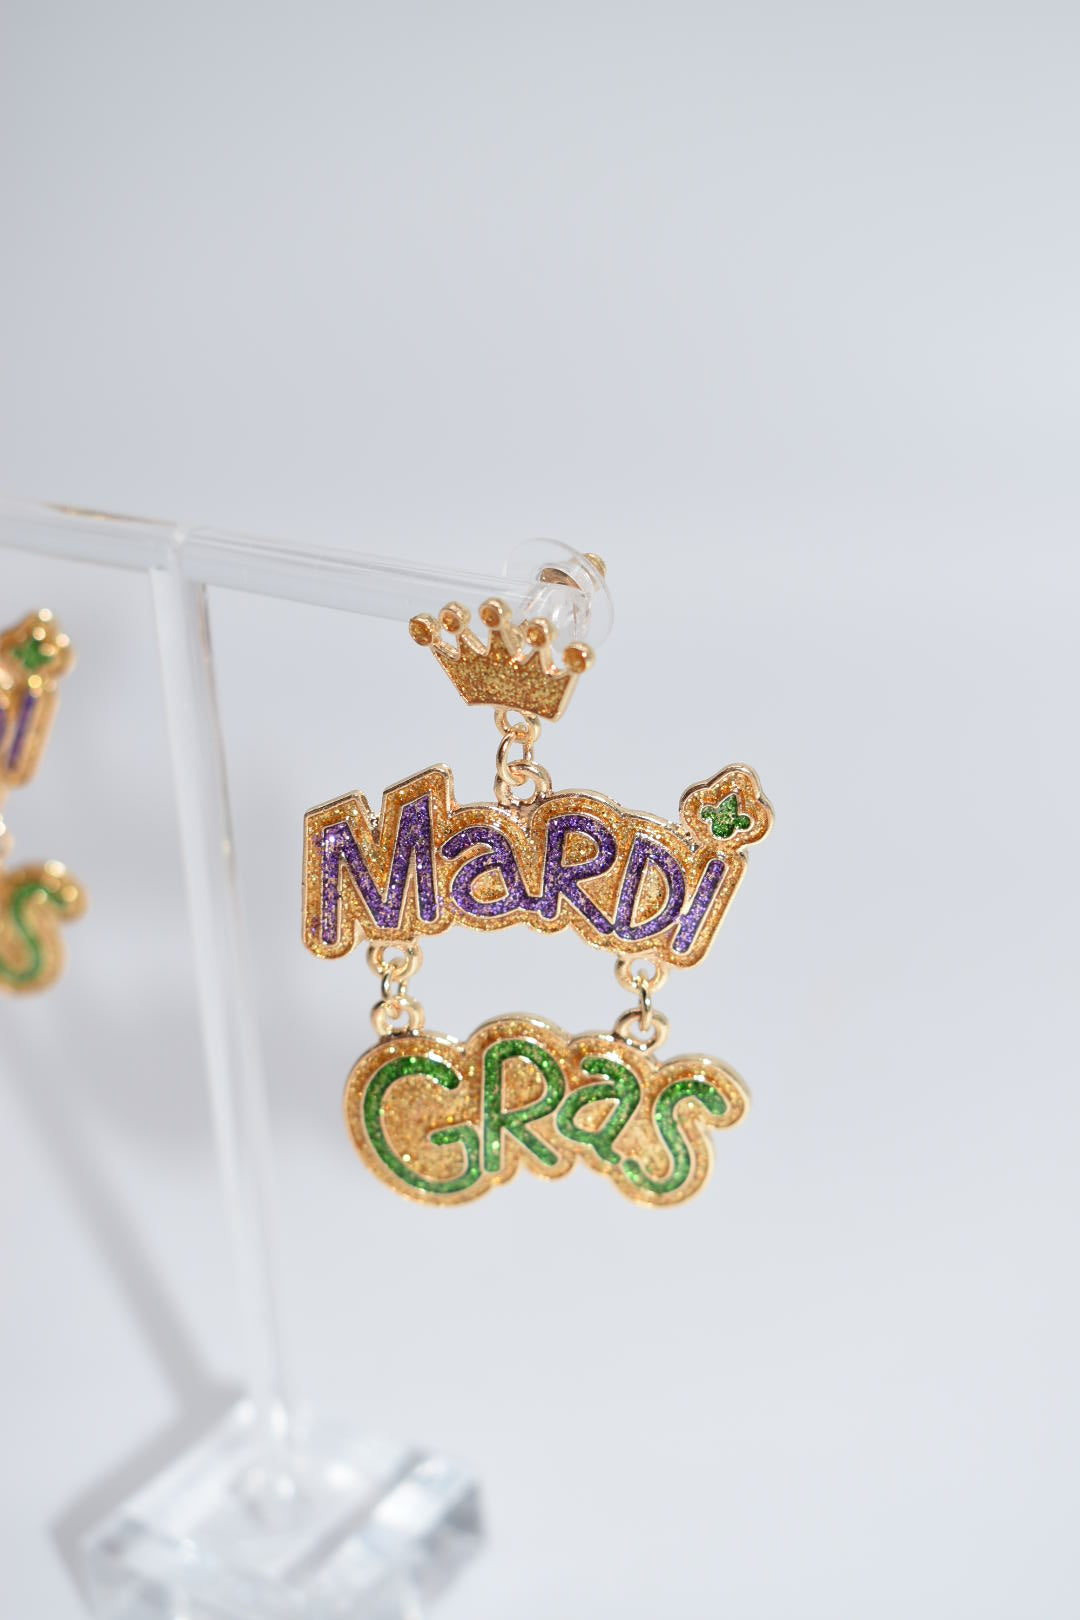 Statement Earrings: "Miss Mardi Gras" Drop Earrings